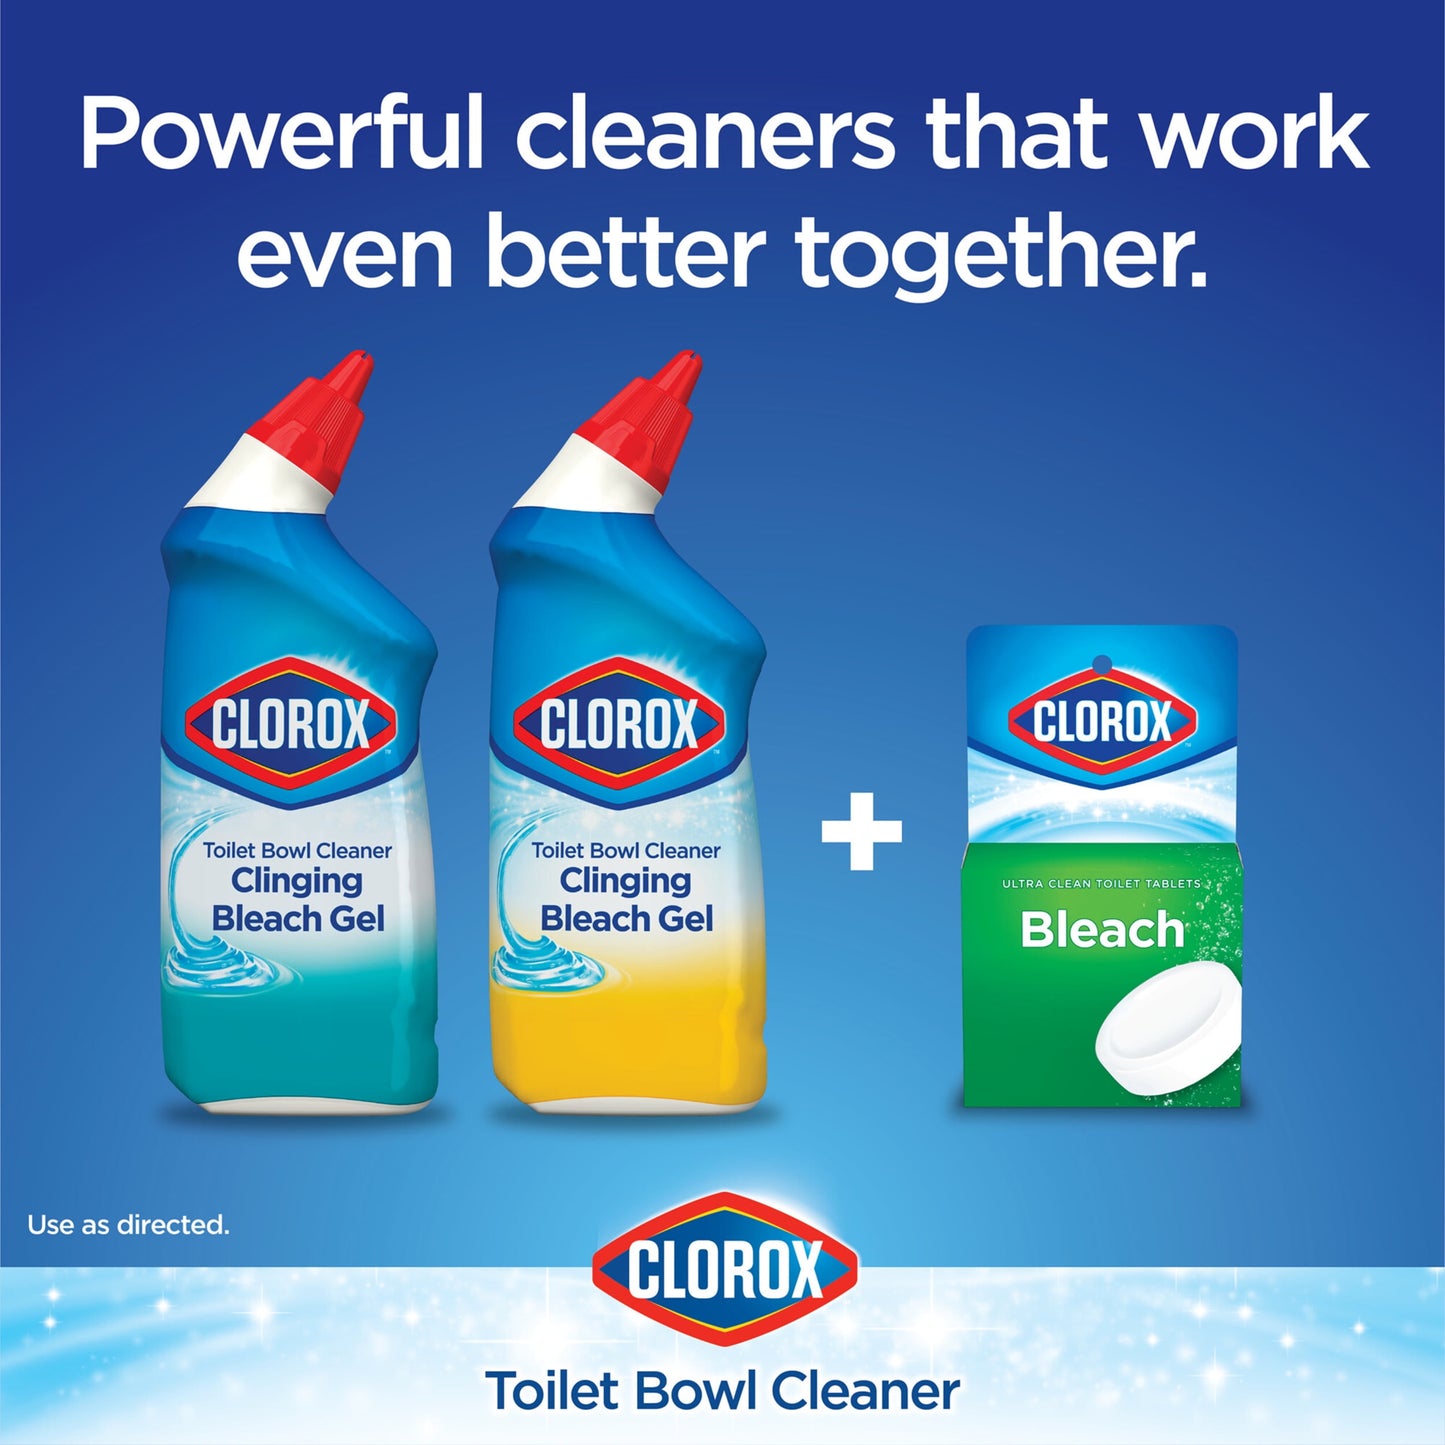 Clorox Toilet Bowl Cleaner Clinging Bleach Gel, Ocean Mist, 24 fl oz, 2 Pack